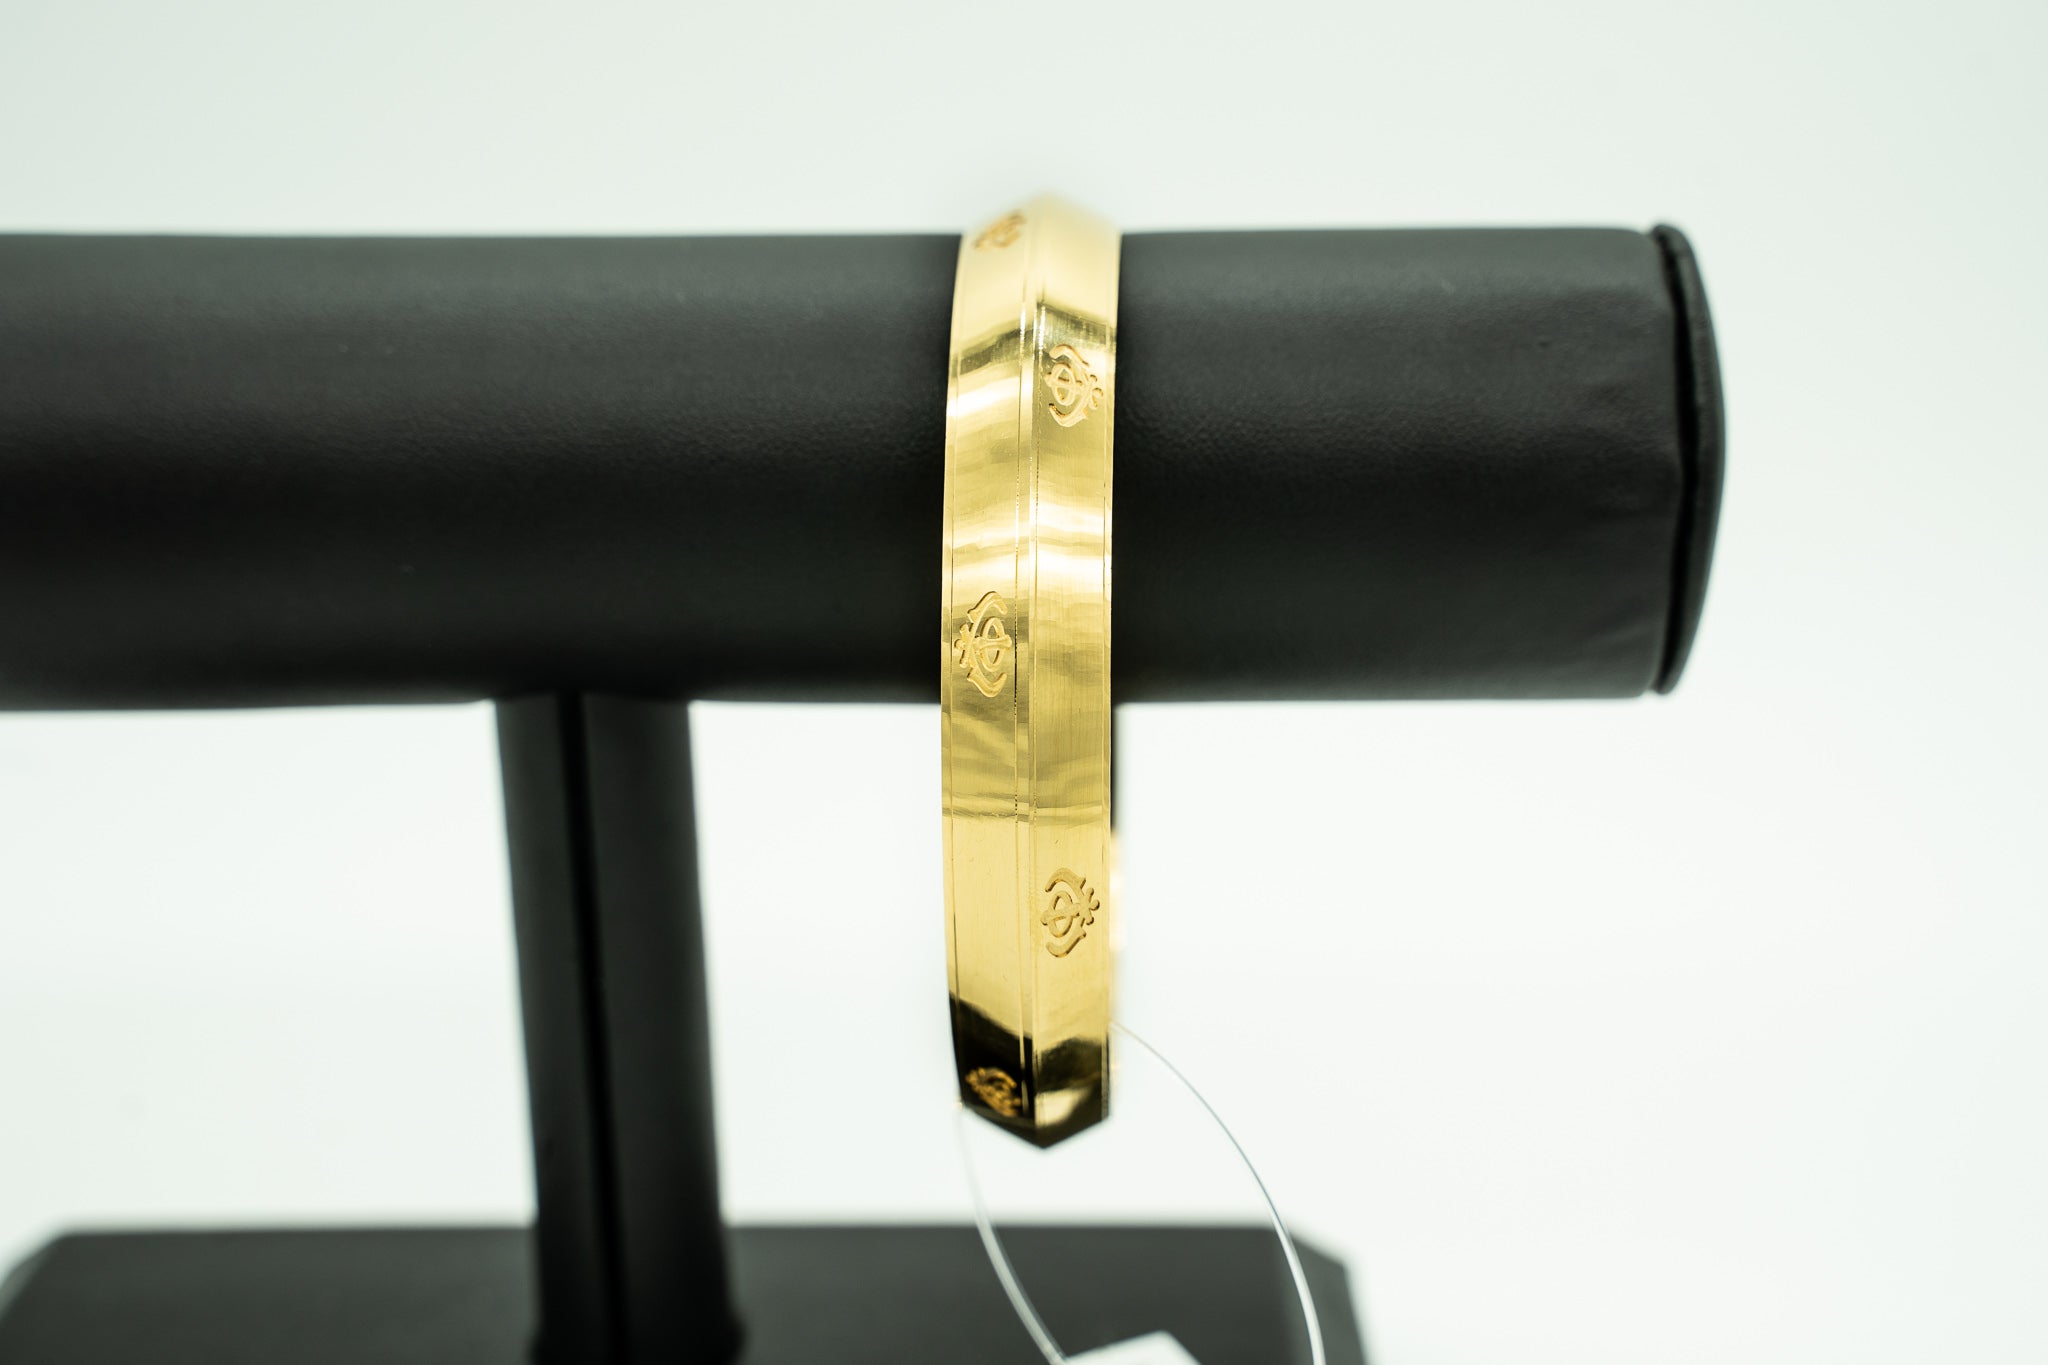 Khanda Design- Double Sided 22k Gold Kara Bracelet